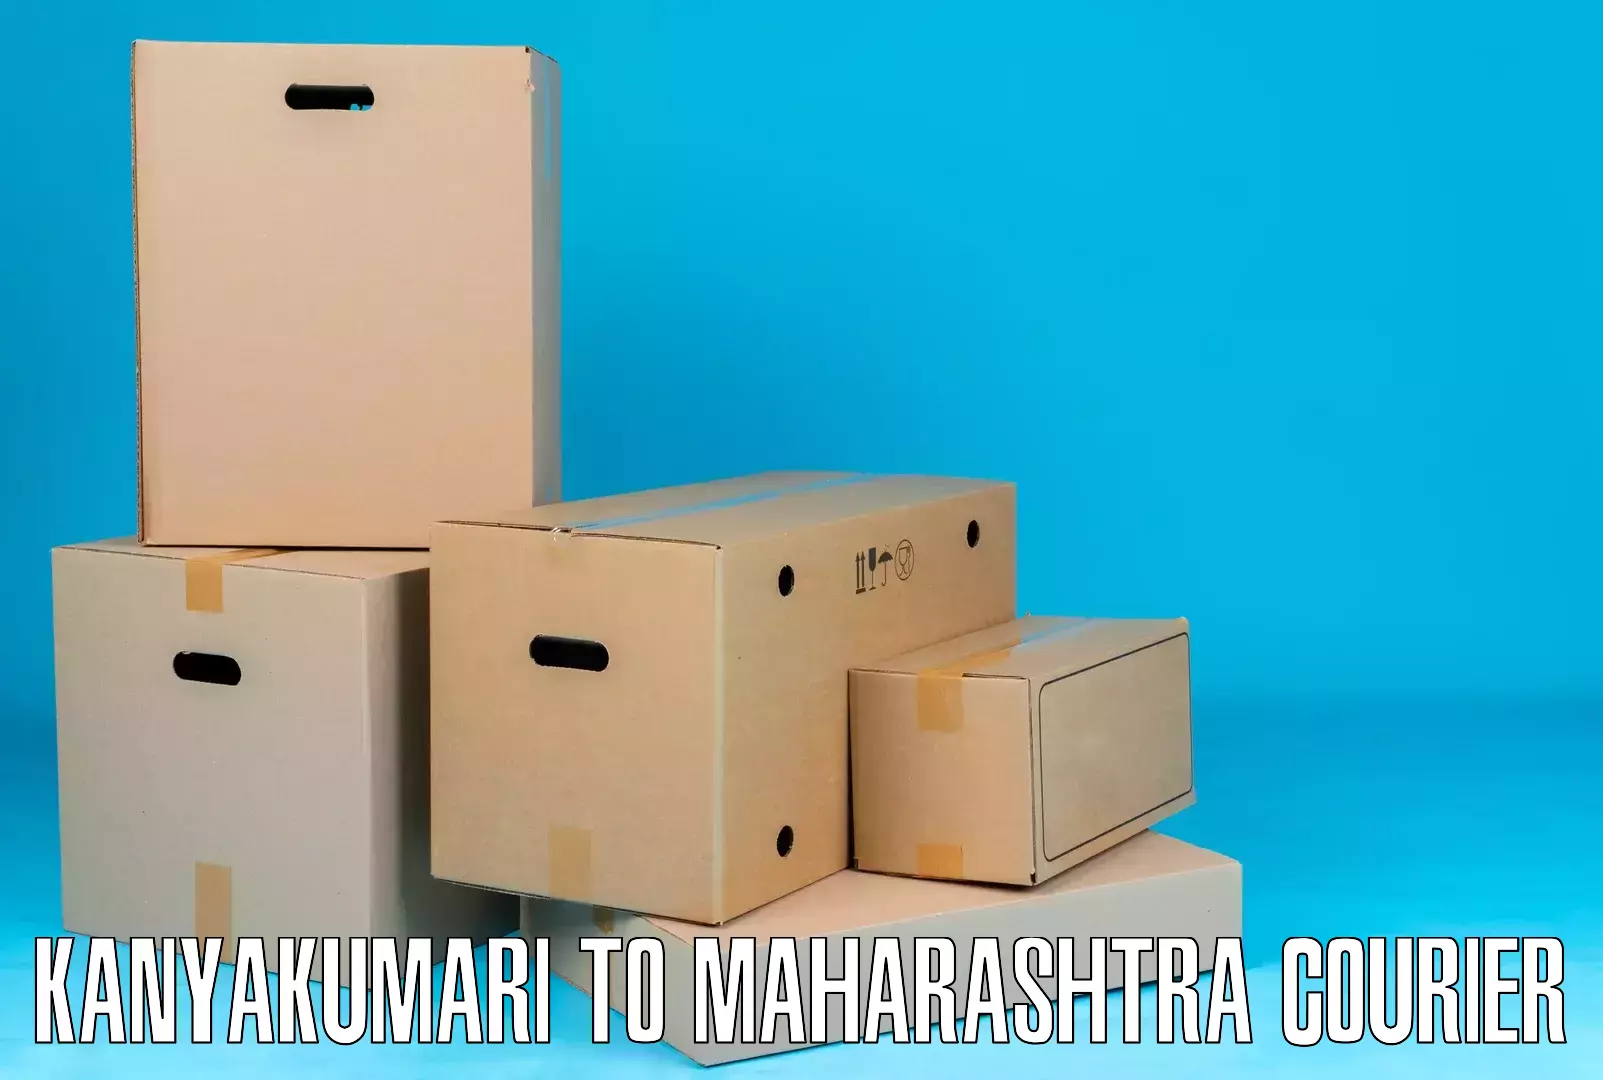 Custom courier solutions Kanyakumari to Dapoli